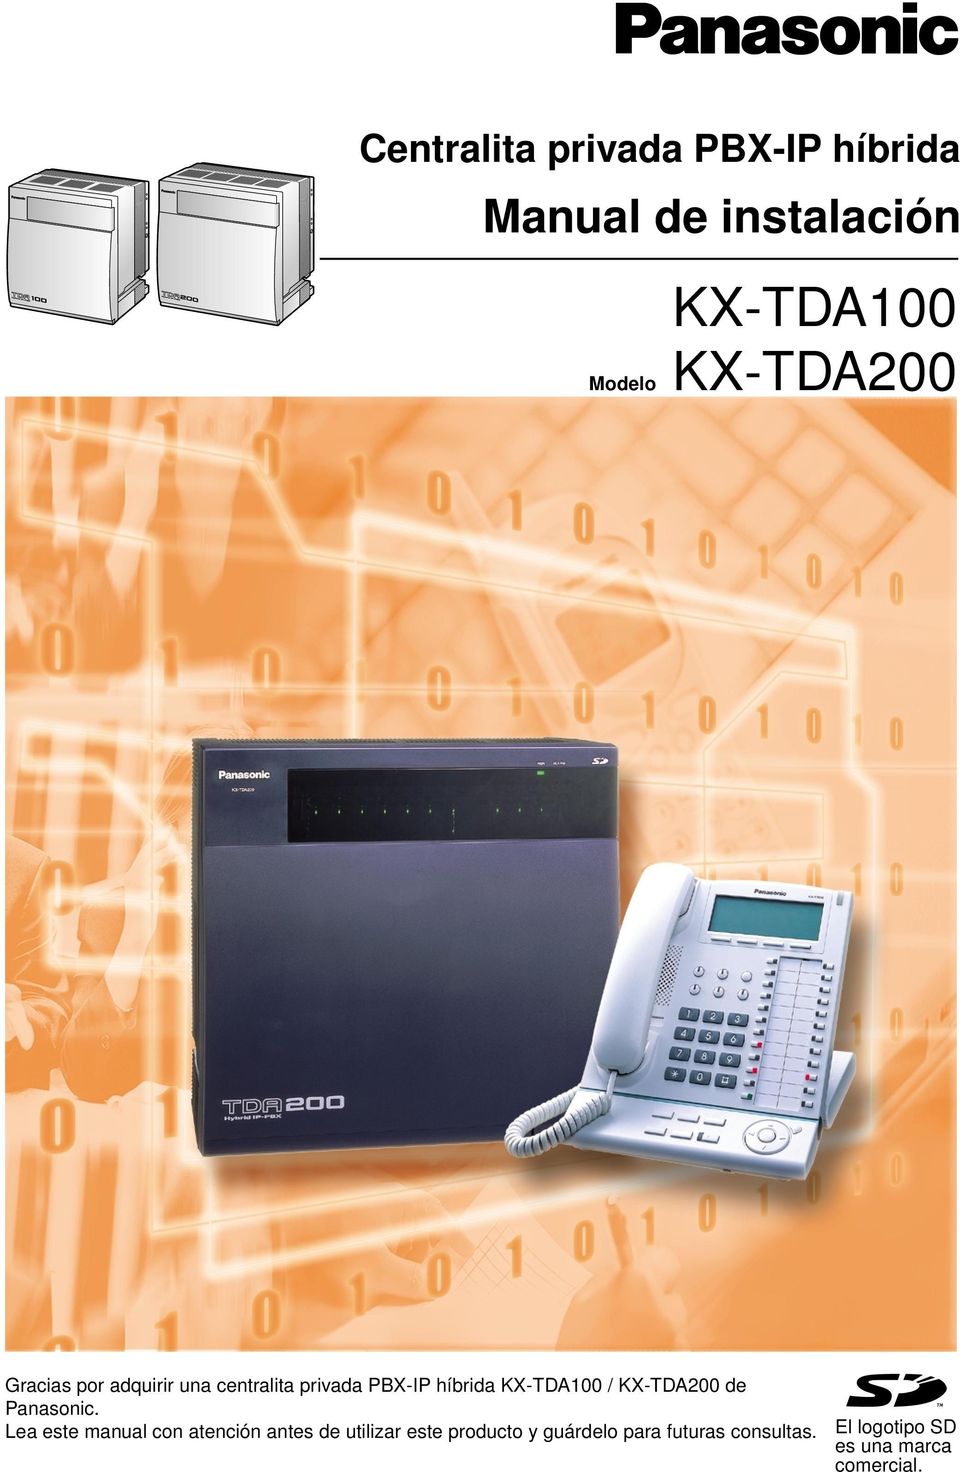 KX-TDA100 / KX-TDA200 de Panasonic.